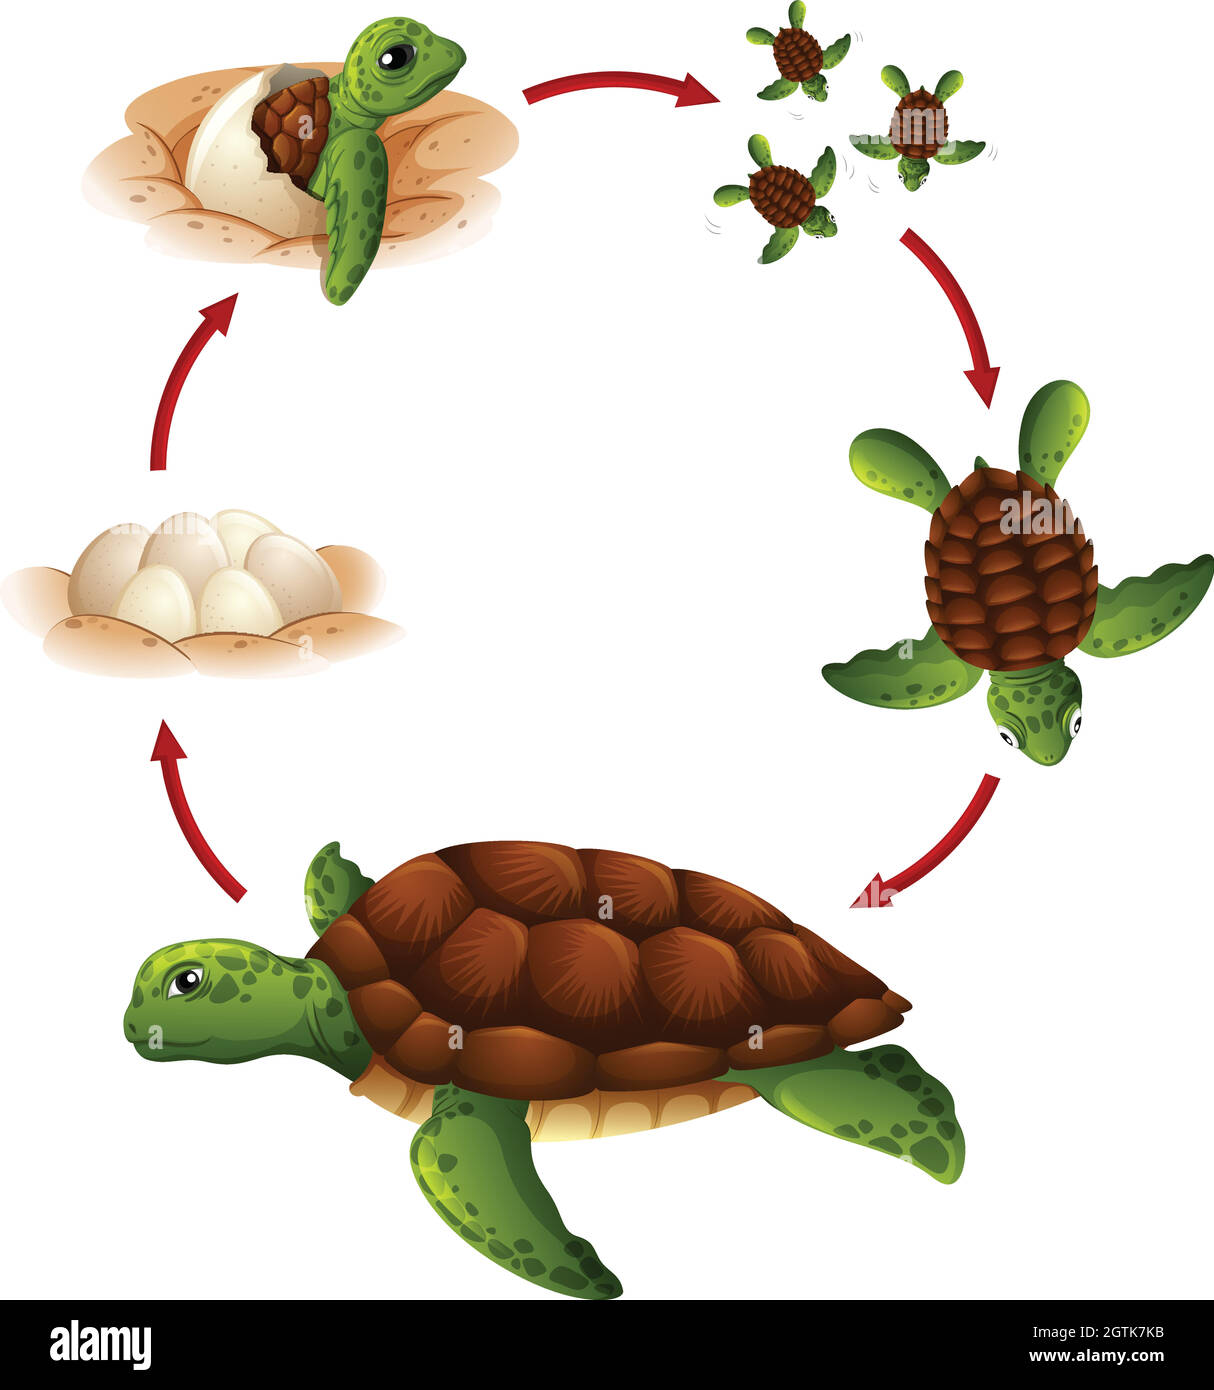 Cycle de vie de la tortue Illustration de Vecteur